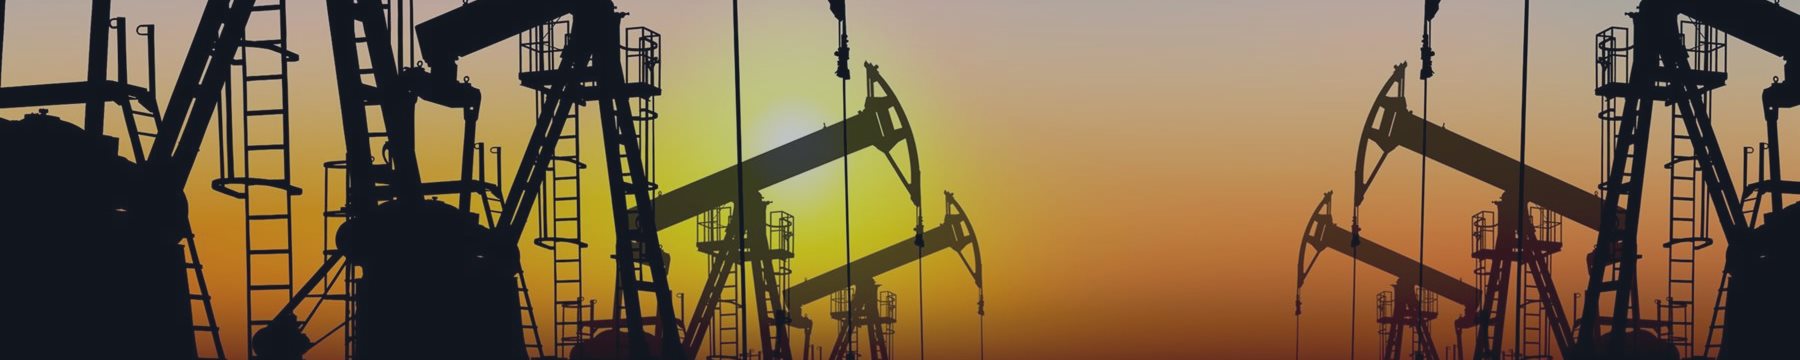 Как ОПЕК навредила глобальным нефтяным корпорациям